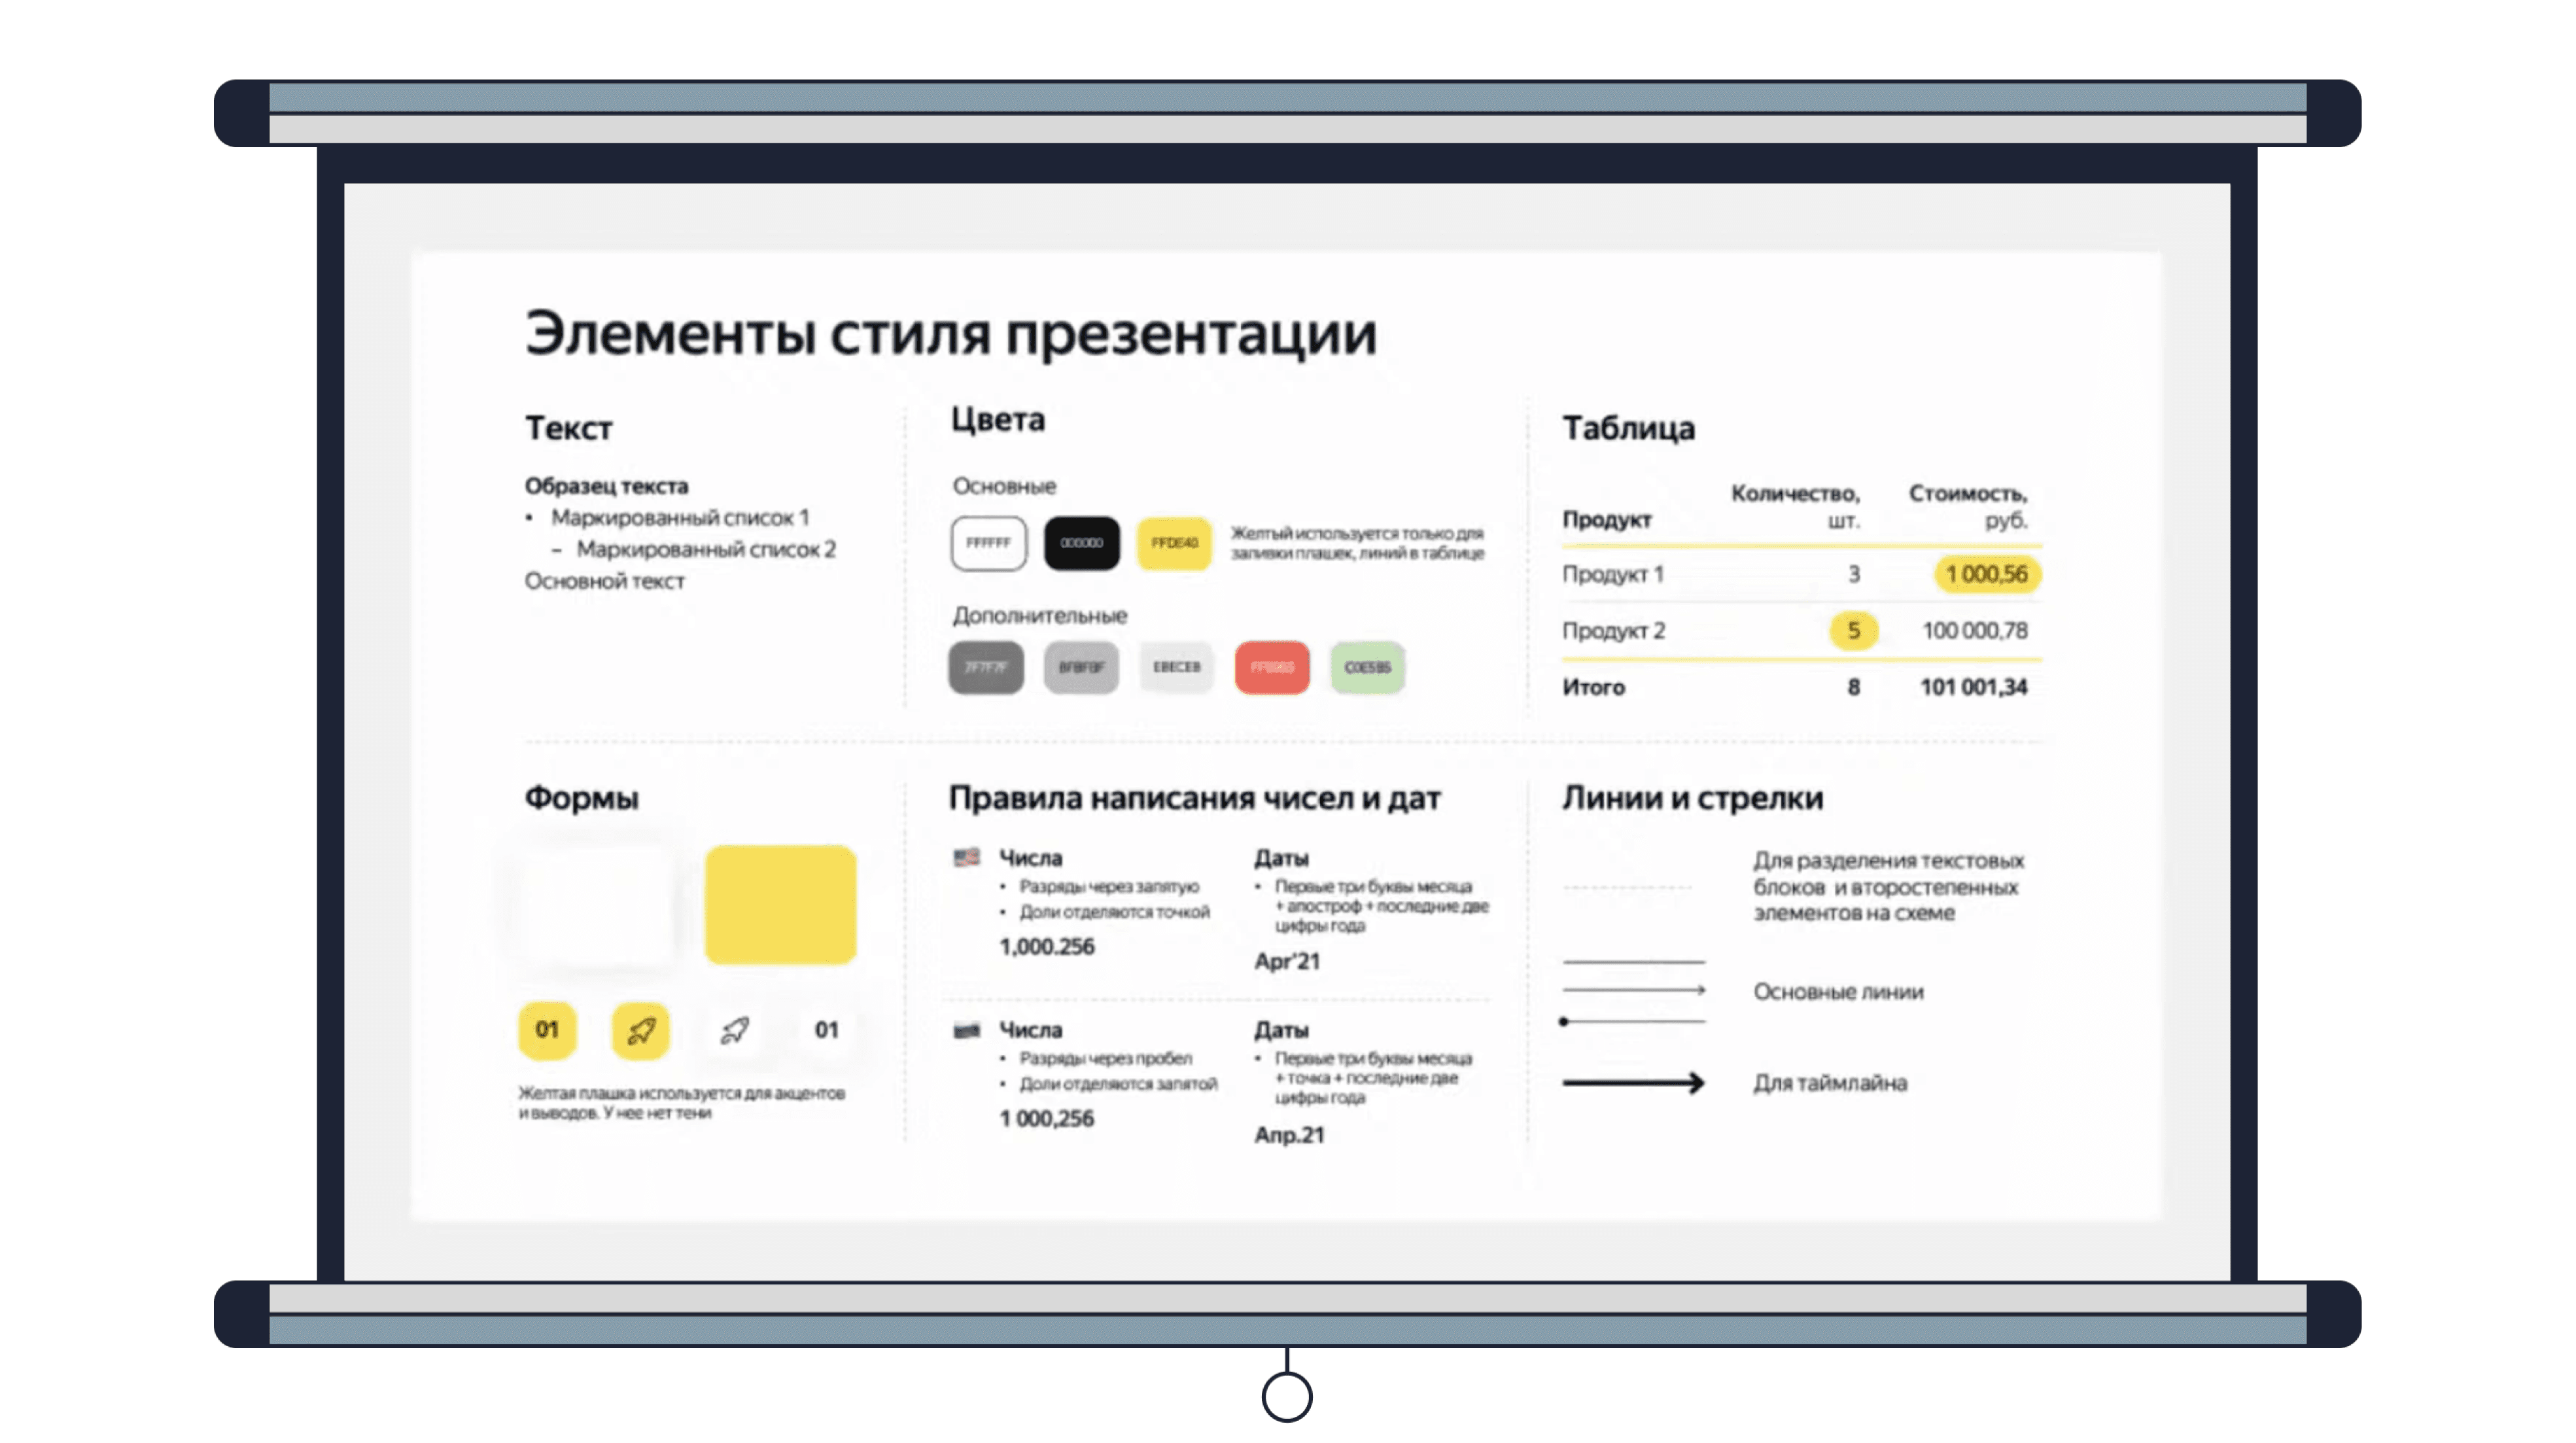 Пример элементов стиля для шаблона Яндекс Go